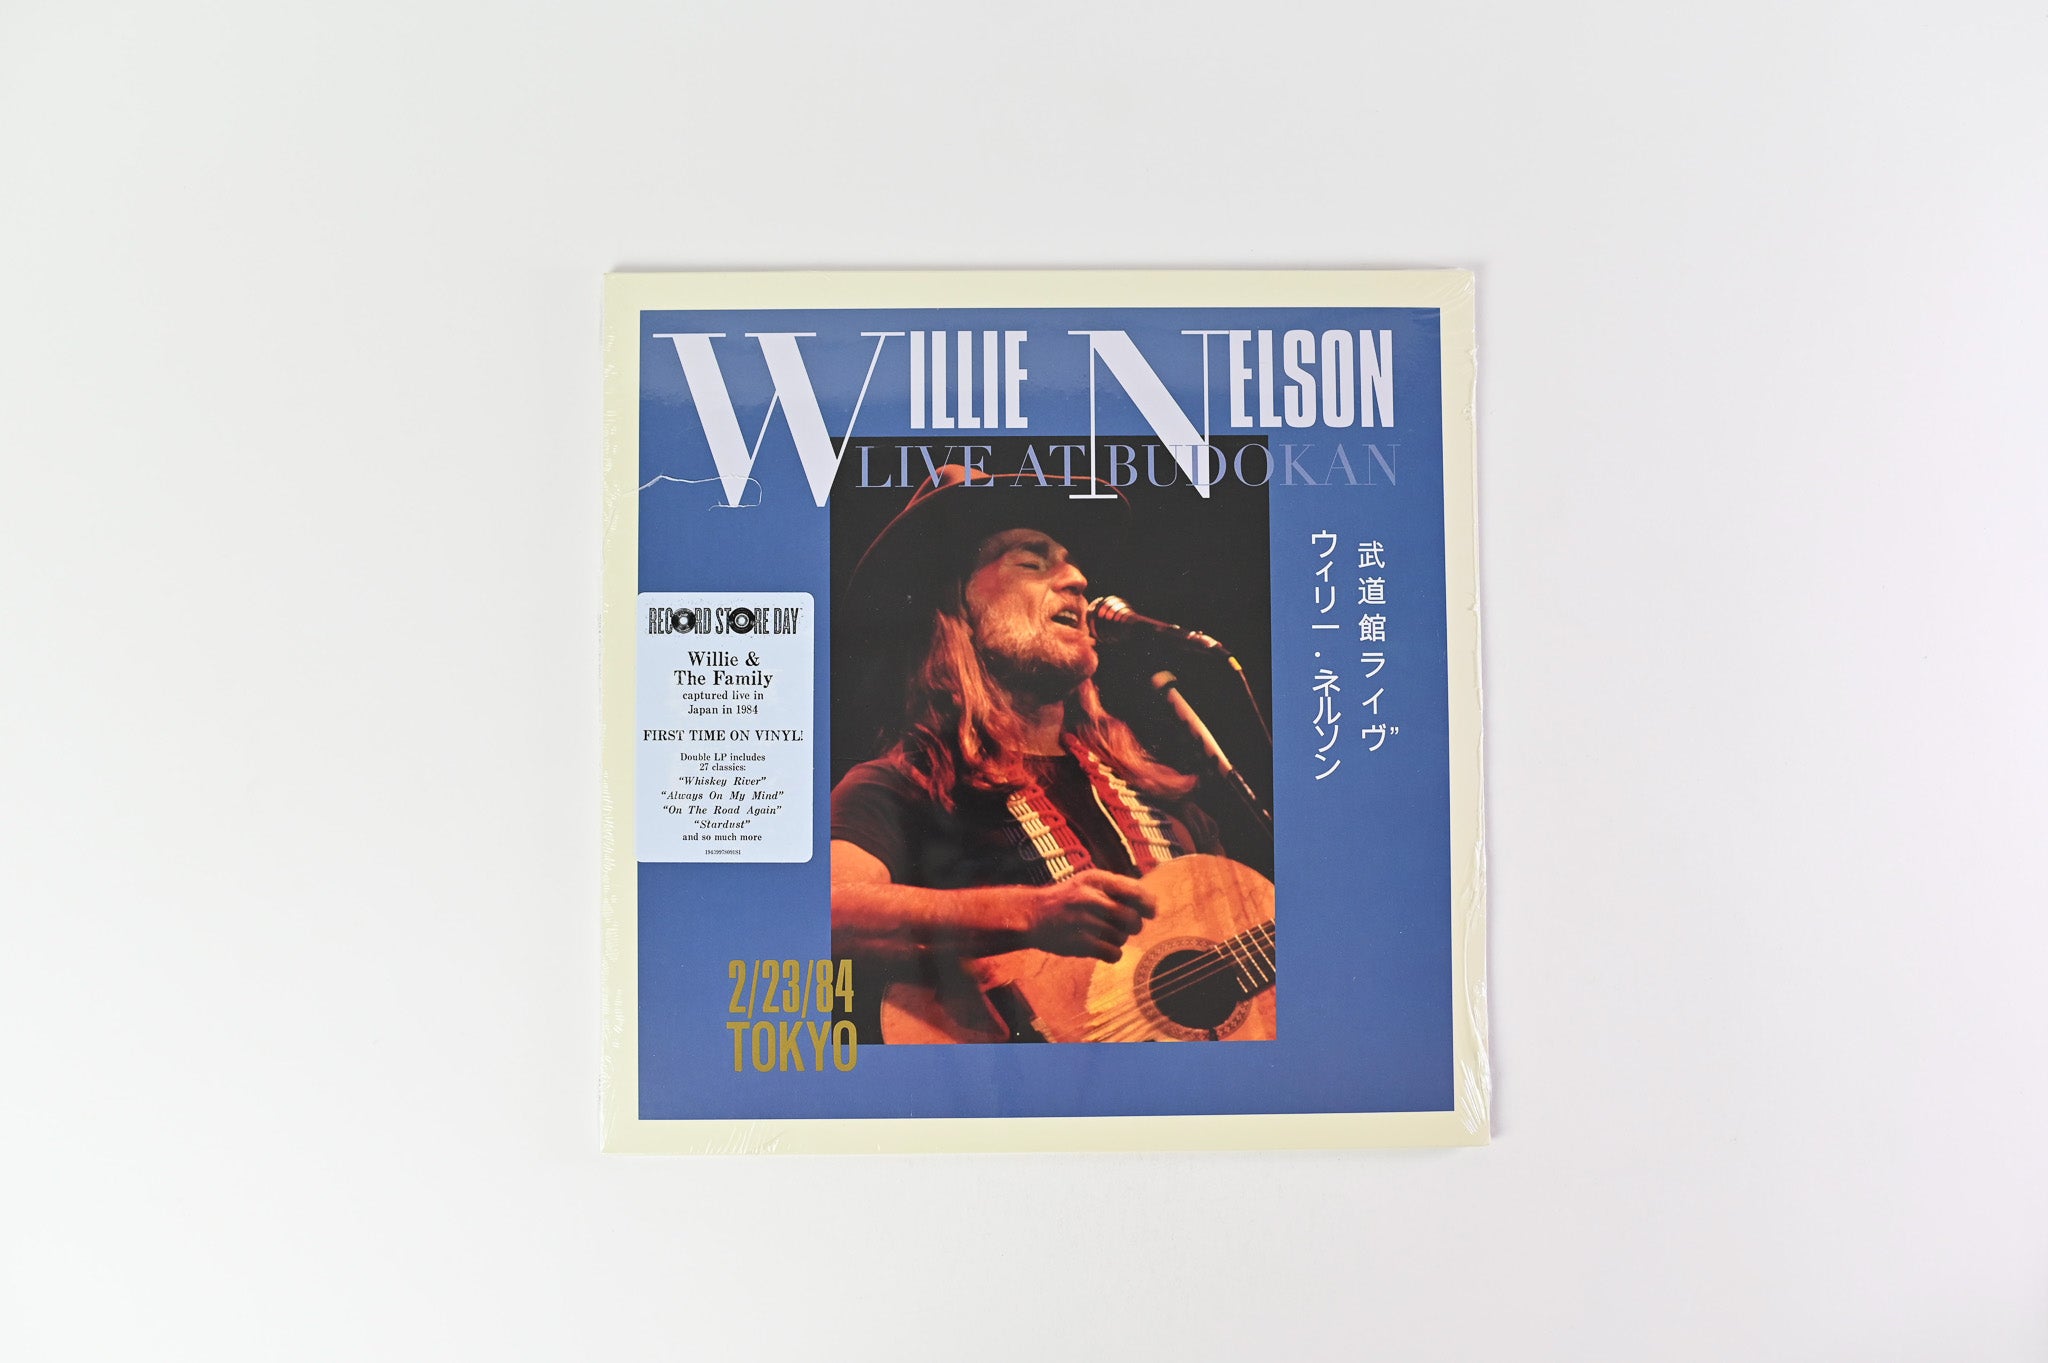 Willie Nelson - Willie Nelson Live At Budokan RSD Reissue Sealed